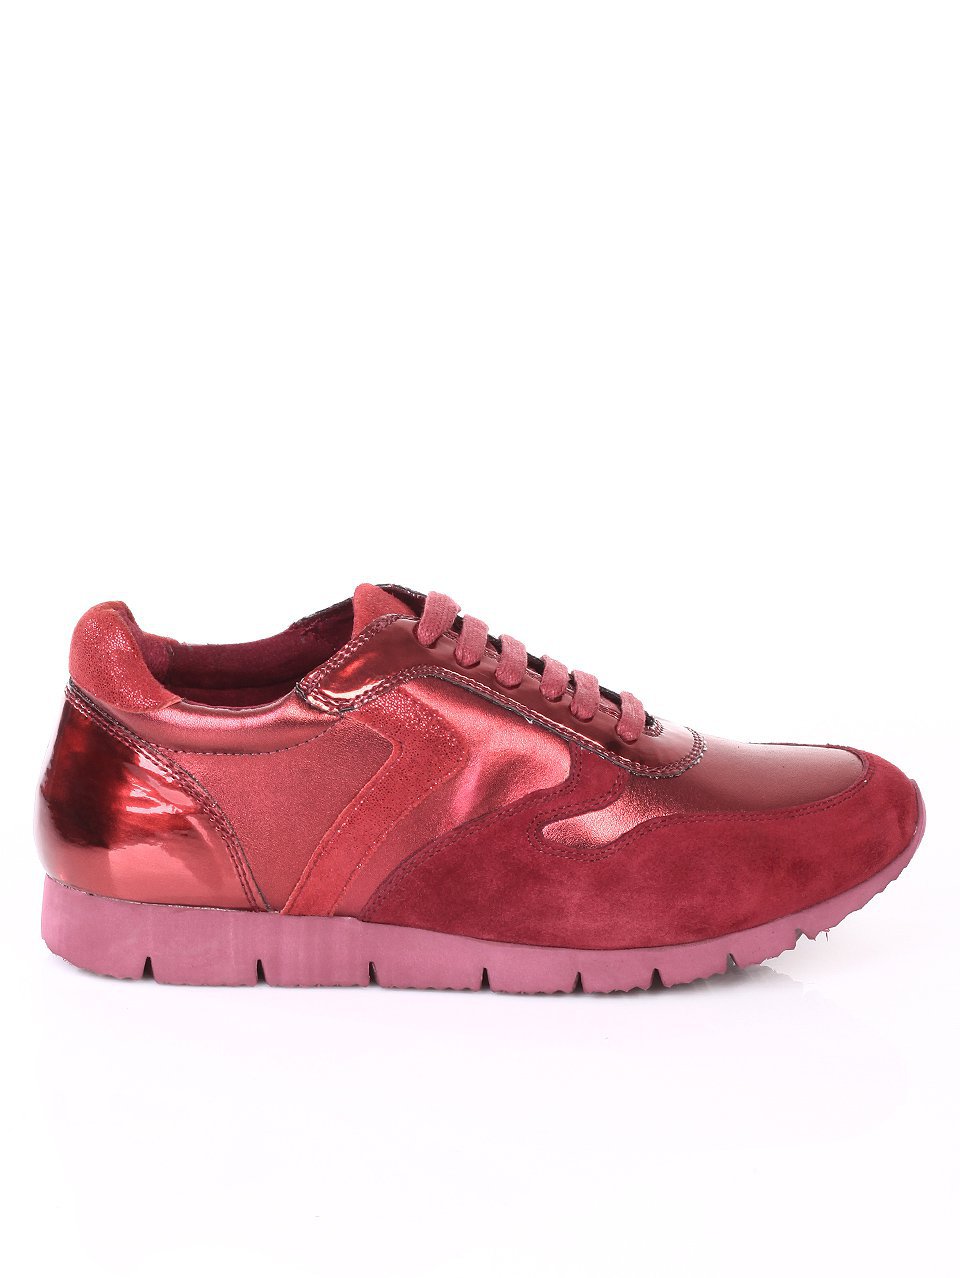 Дамски обувки от естествена кожа и естествен велур 3I-17770 burgundy